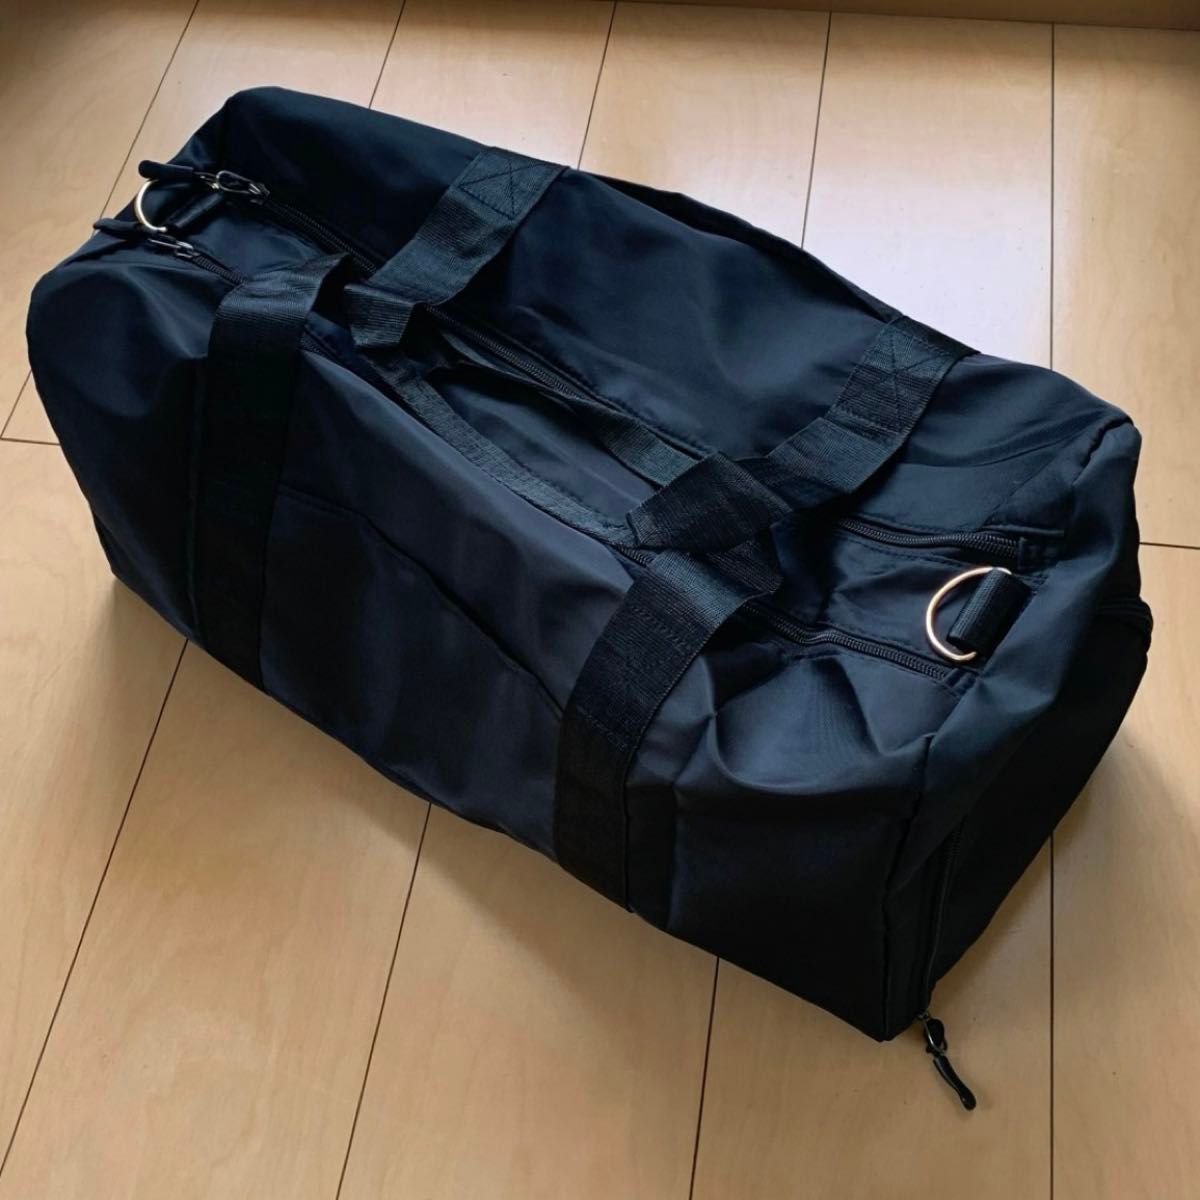 ボストンバッグ 旅行カバン 大容量 旅行バッグ ジム 修学旅行 おしゃれ トラベル スポーツバッグ